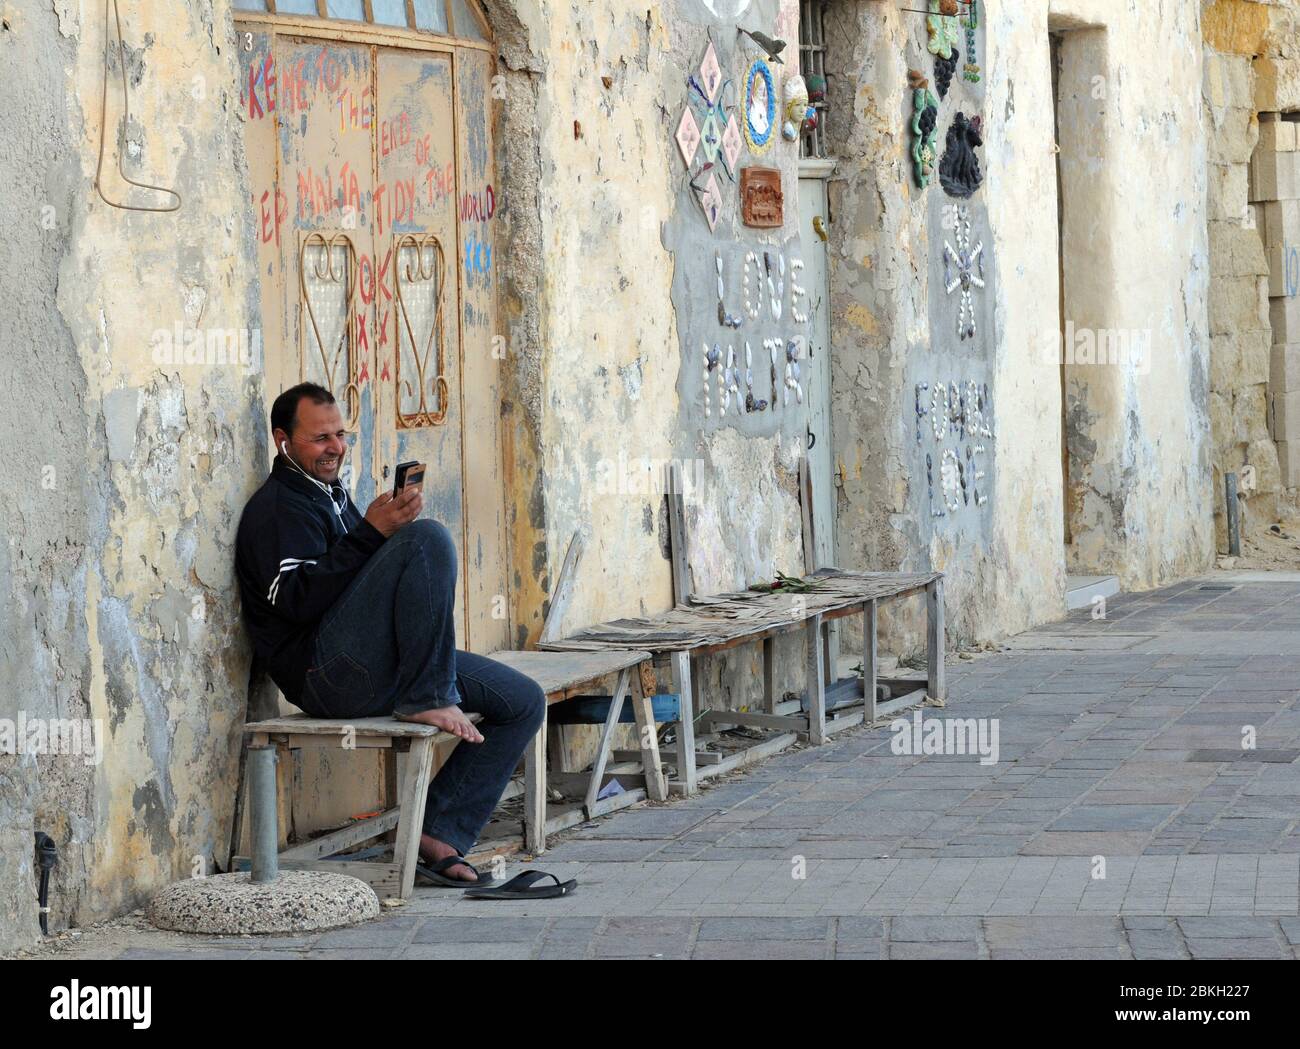 Un homme sourit alors qu'il parle sur un téléphone portable alors qu'il est assis sur un banc dans le village de Marsaxlokk, à Malte. Des œuvres d'art en mosaïque décorent les murs voisins. Banque D'Images